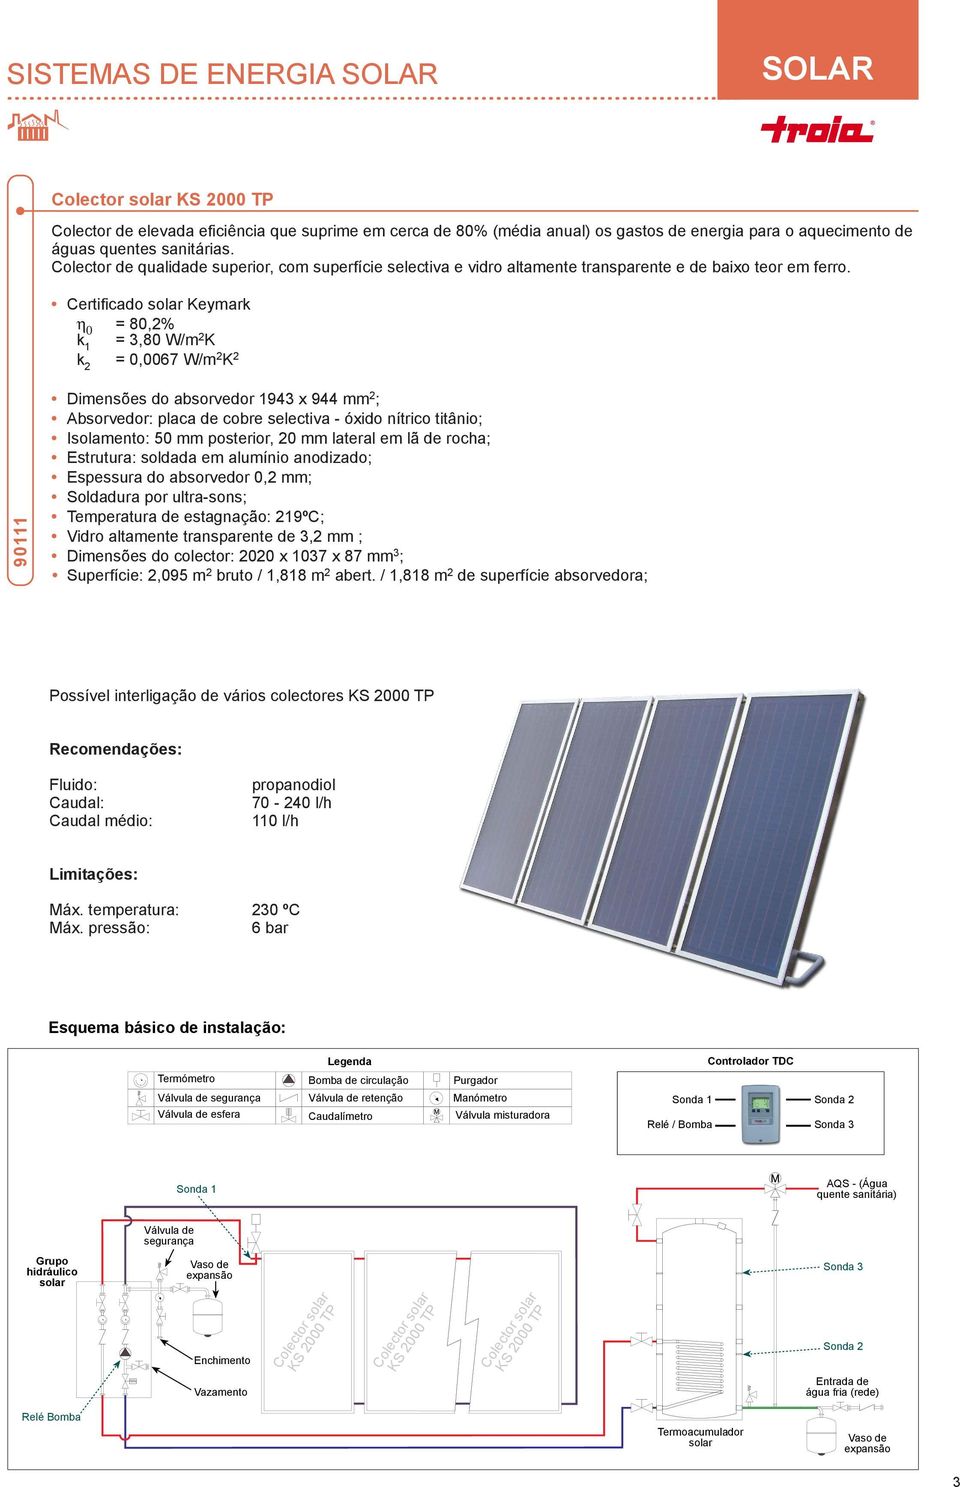 Certificado solar Keymark η 0 = 80,2% k 1 = 3,80 W/m 2 K k 2 = 0,007 W/m 2 K 2 90111 Dimensões do absorvedor 1943 x 944 mm 2 ; Absorvedor: placa de cobre selectiva óxido nítrico titânio; Isolamento: